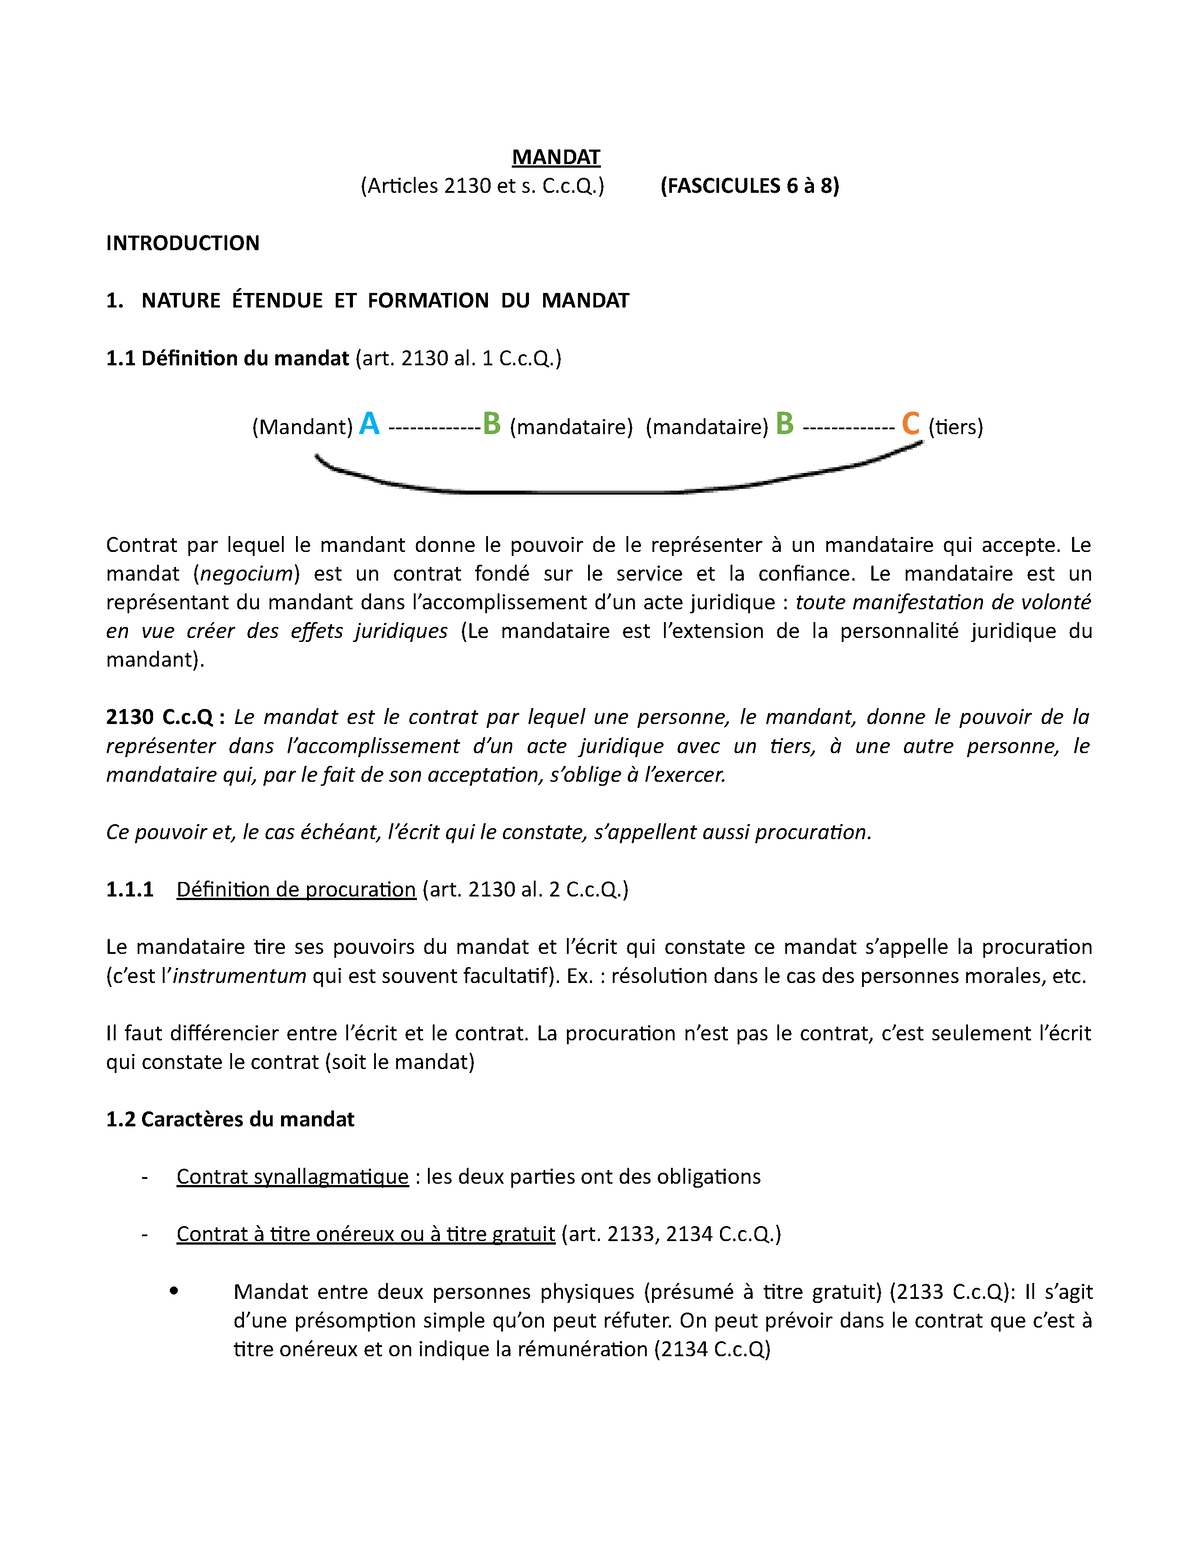 Notes De Cours Mandat Mandat Articles 2130 Et S C C Fascicules 6 A 8 Introduction 1 Nature Studocu